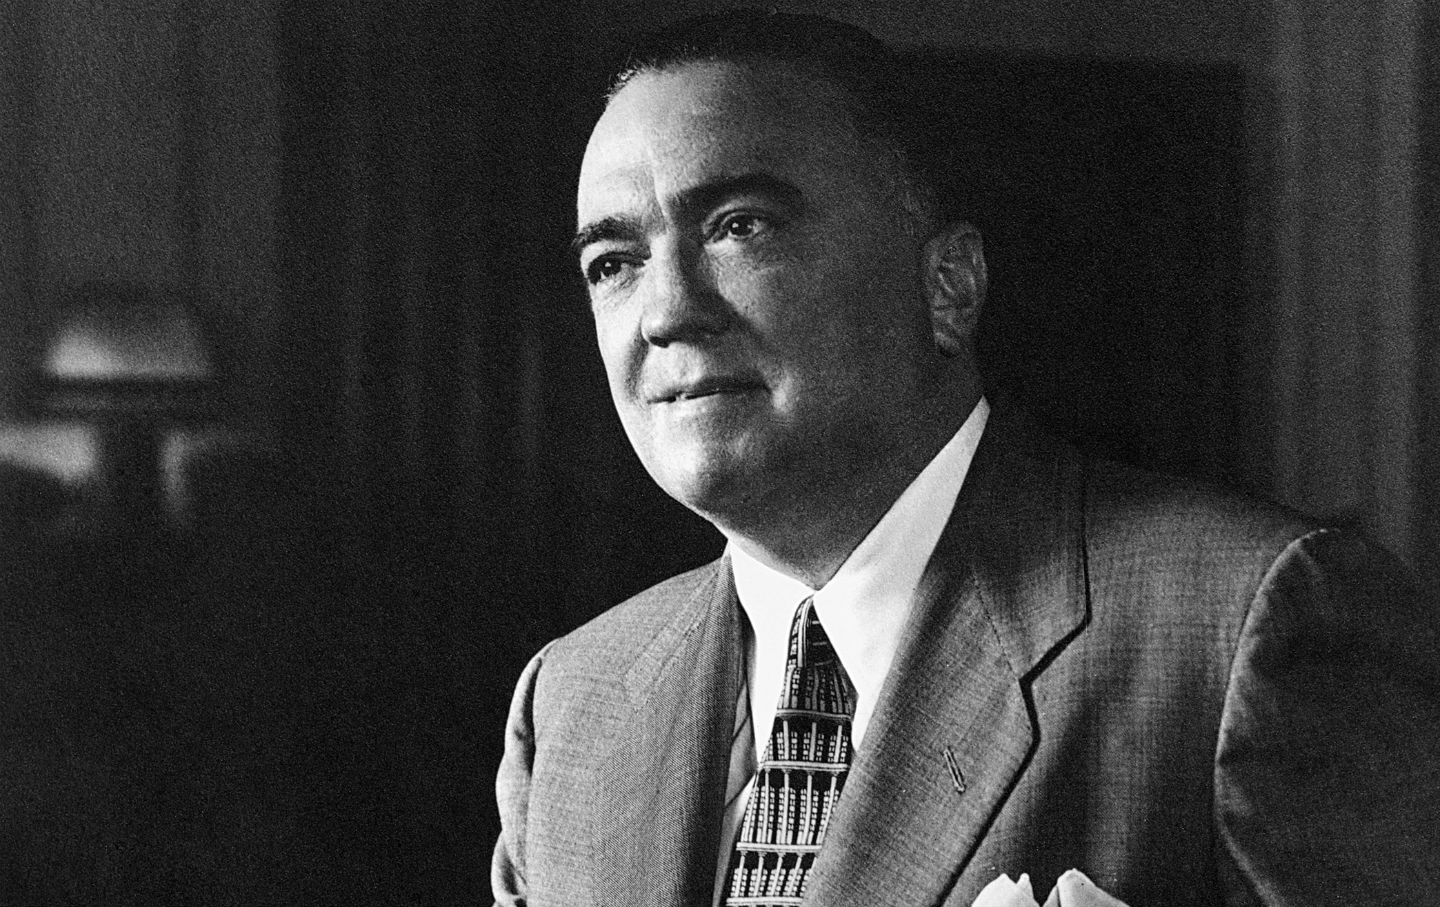 May 2, 1972: J. Edgar Hoover Dies